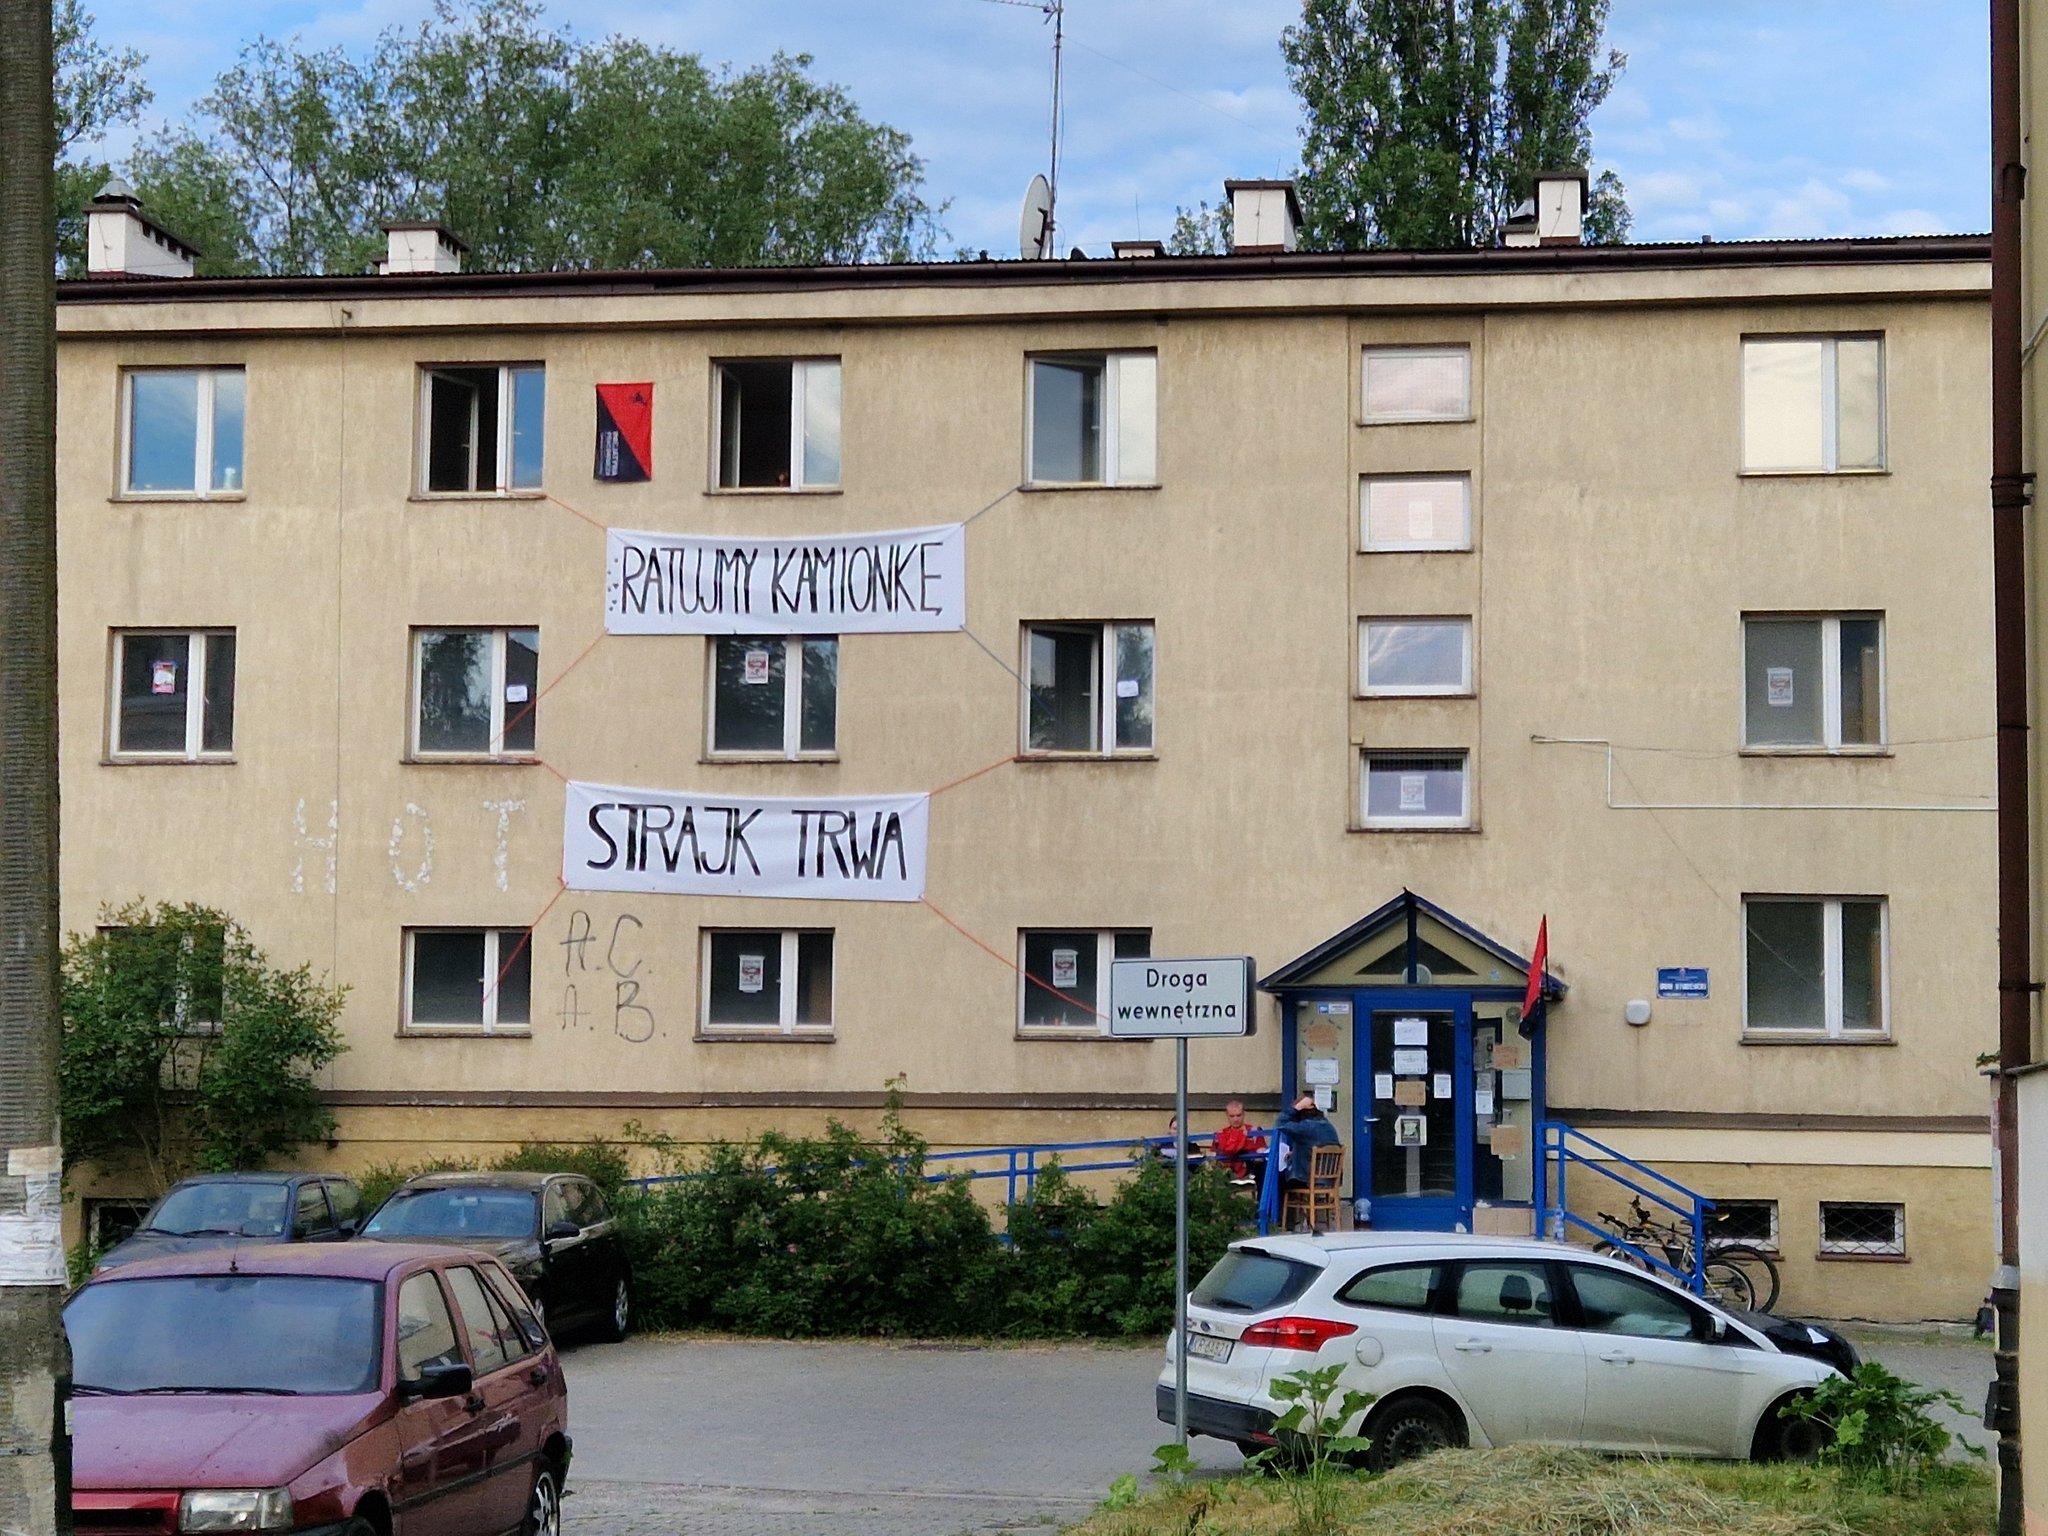 Fotografia przedstawia budynek domu studenckiego "Kamionka" z wywieszonymi banerami "Ratujmy kamionkę" i "Strajk trwa"